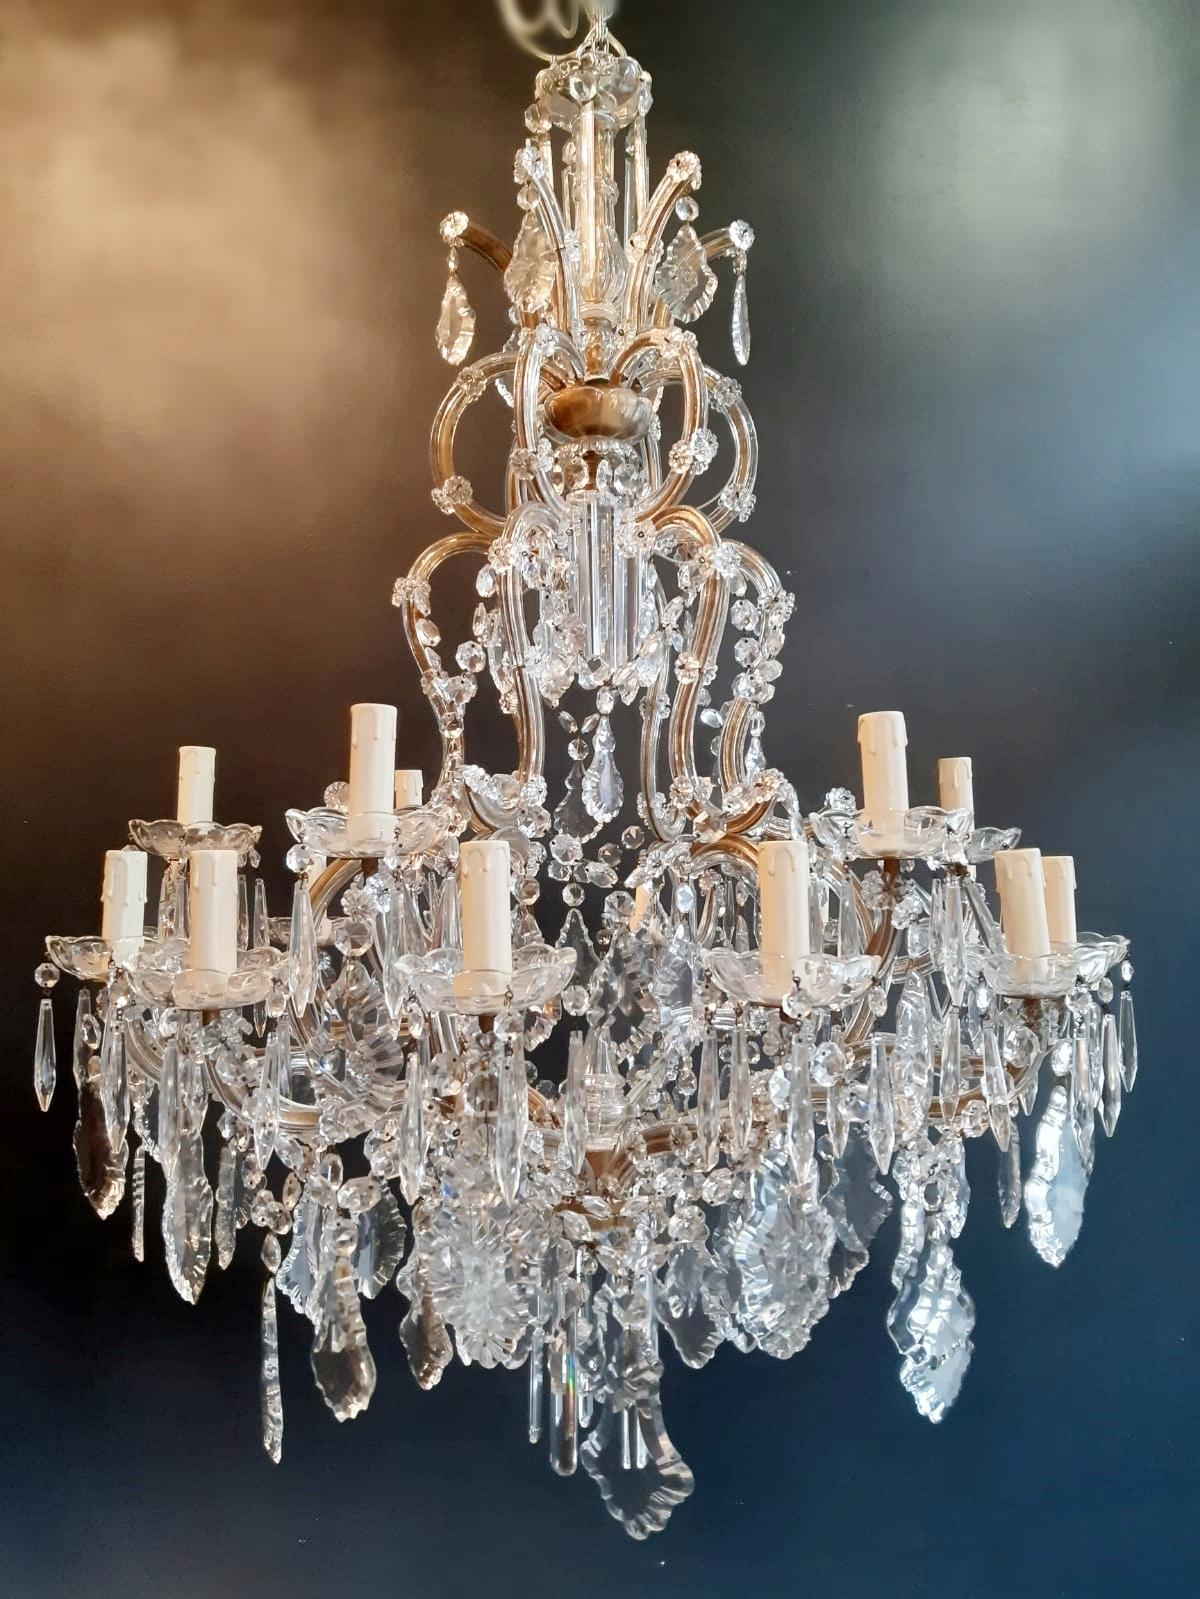 Nineteen-Light Maria Theresa Chandelier Antique Ceiling Lamp Lustre Art Nouveau 3